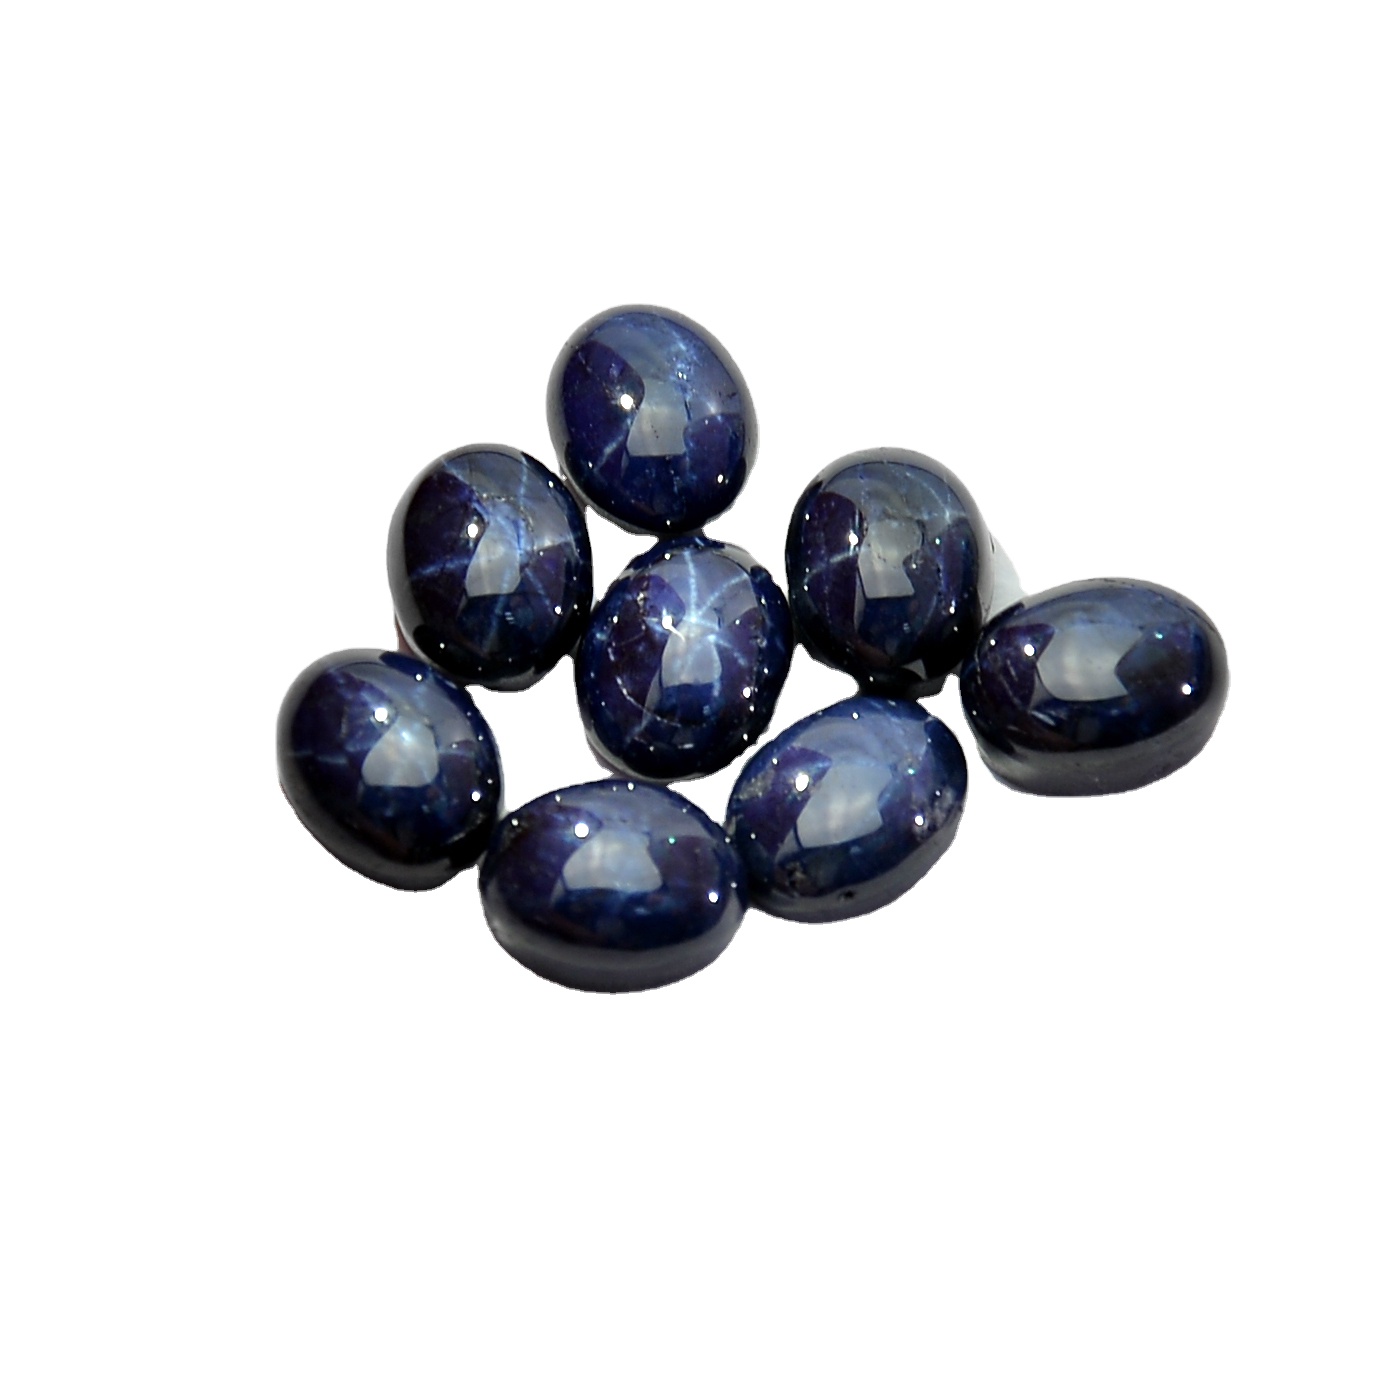 Оптовая цена натуральная звезда сапфир Blue Sapphire хорошее качество1